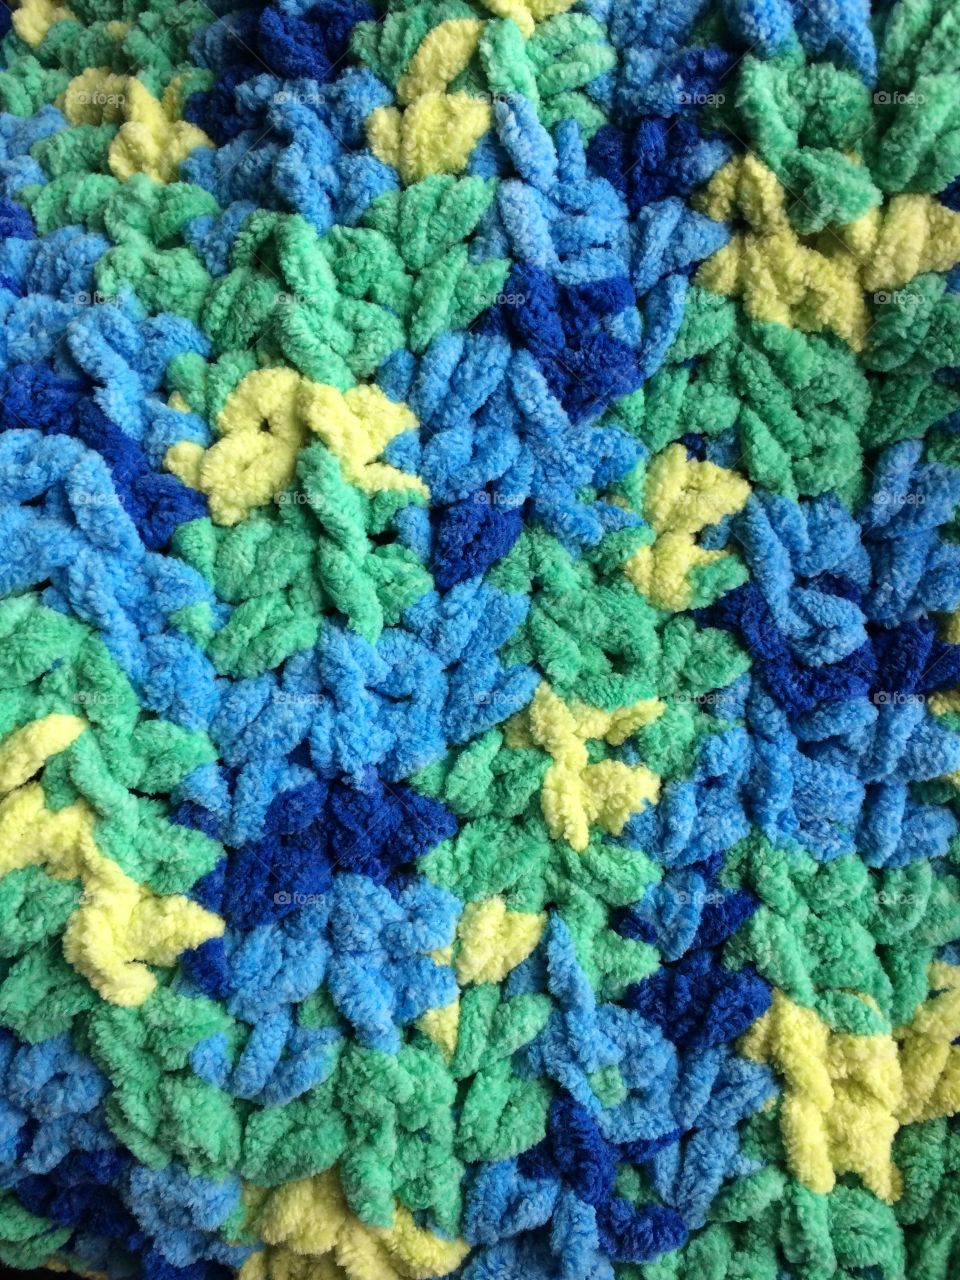 Crochet day